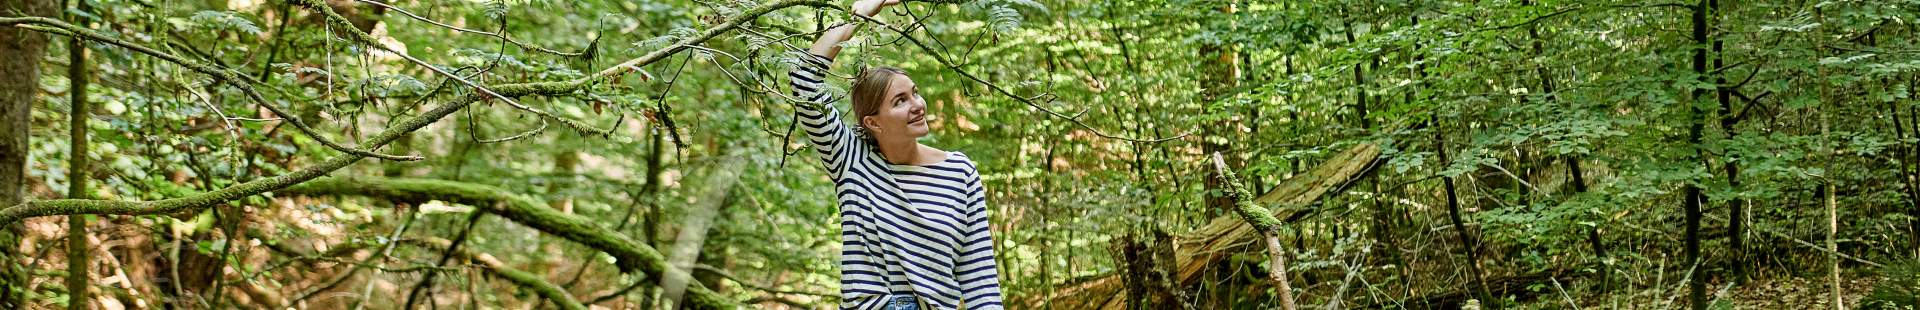 VRK – Nachhaltige Gütesiegel im Blick – Eine junge Frau geht durch den Wald spazieren.